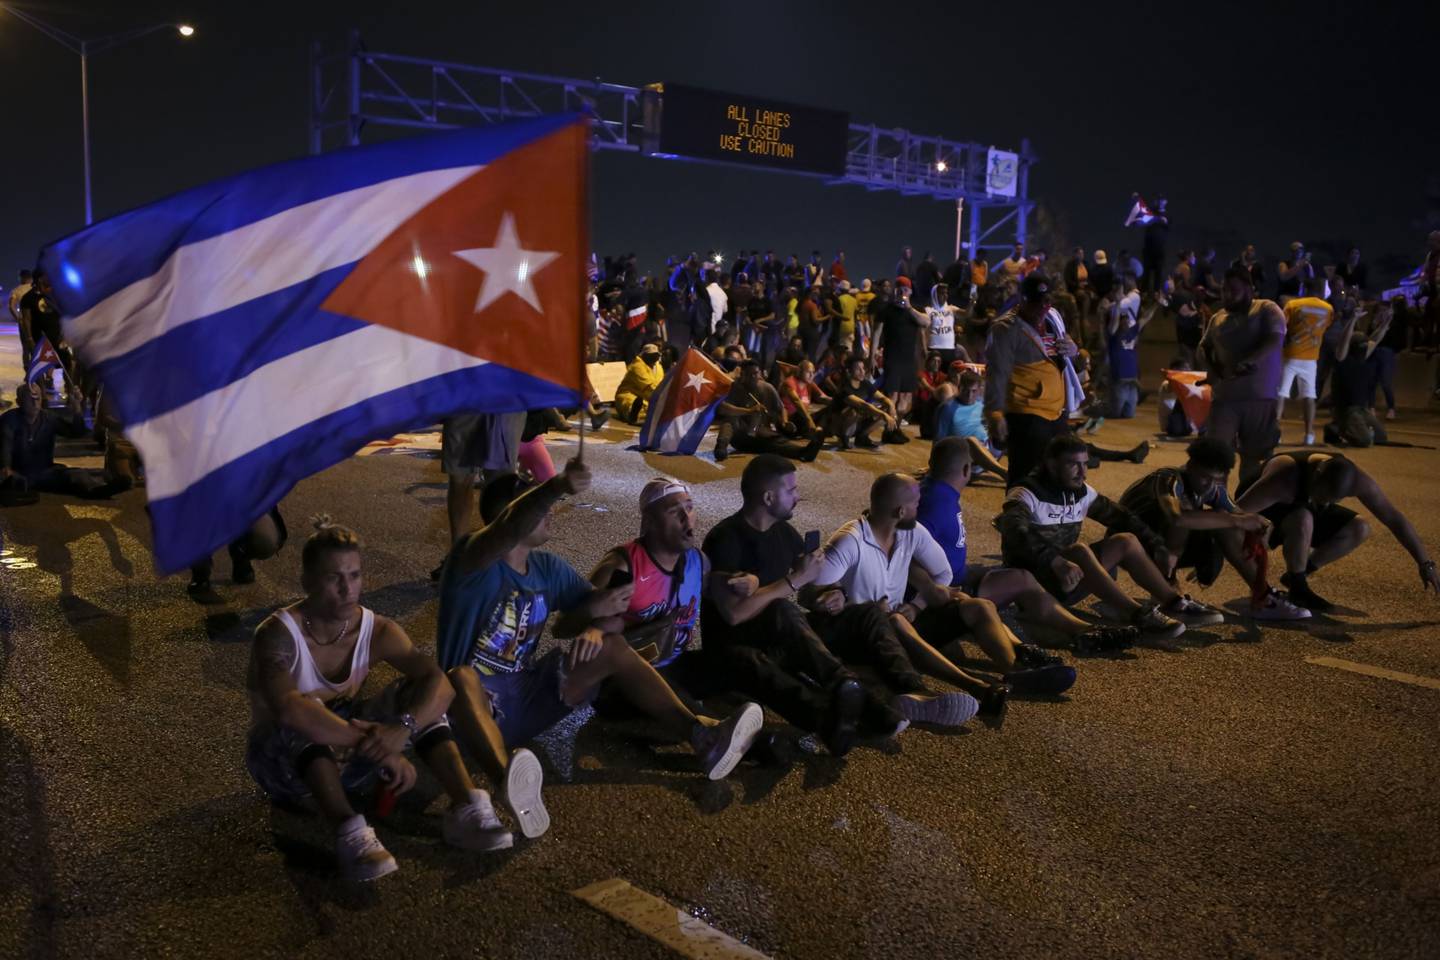 Los manifestantes se reúnen durante una protesta de 'Rally por Cuba' en Miami, Florida, luego de que estallaran protestas contra el gobierno en la isla mientras miles de personas denunciaban el aumento de los precios, la falta de productos básicos y frecuentes apagones. Fotógrafo: Marco Bello / Bloomberg